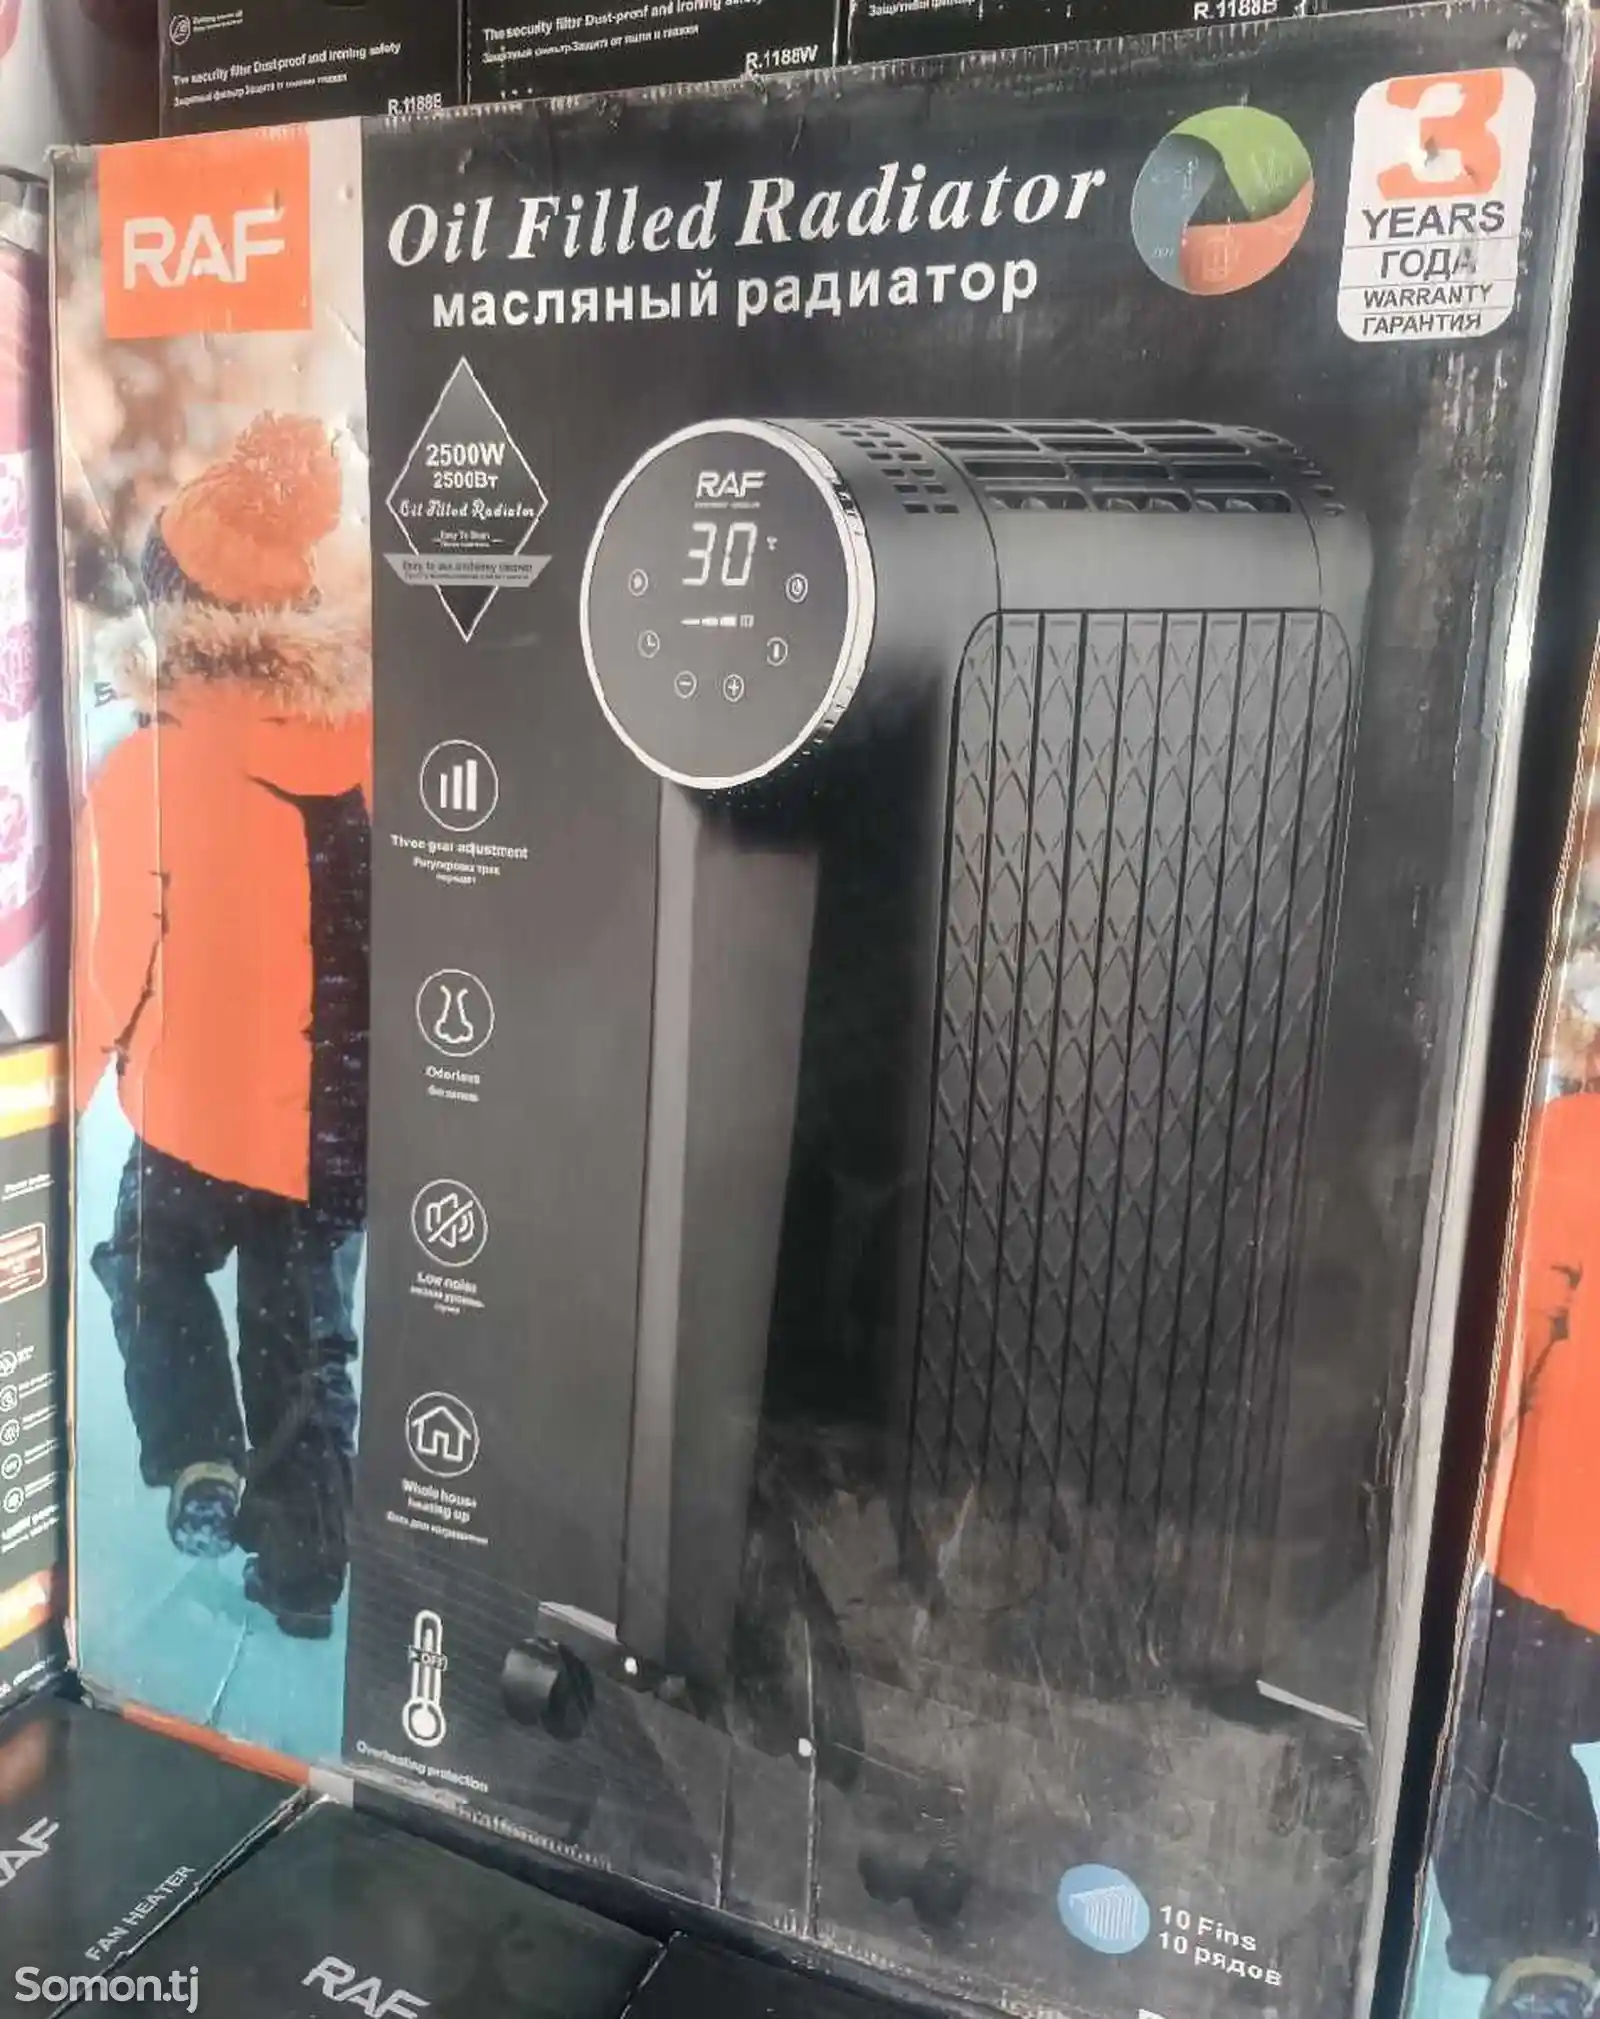 Радиатор RAF10